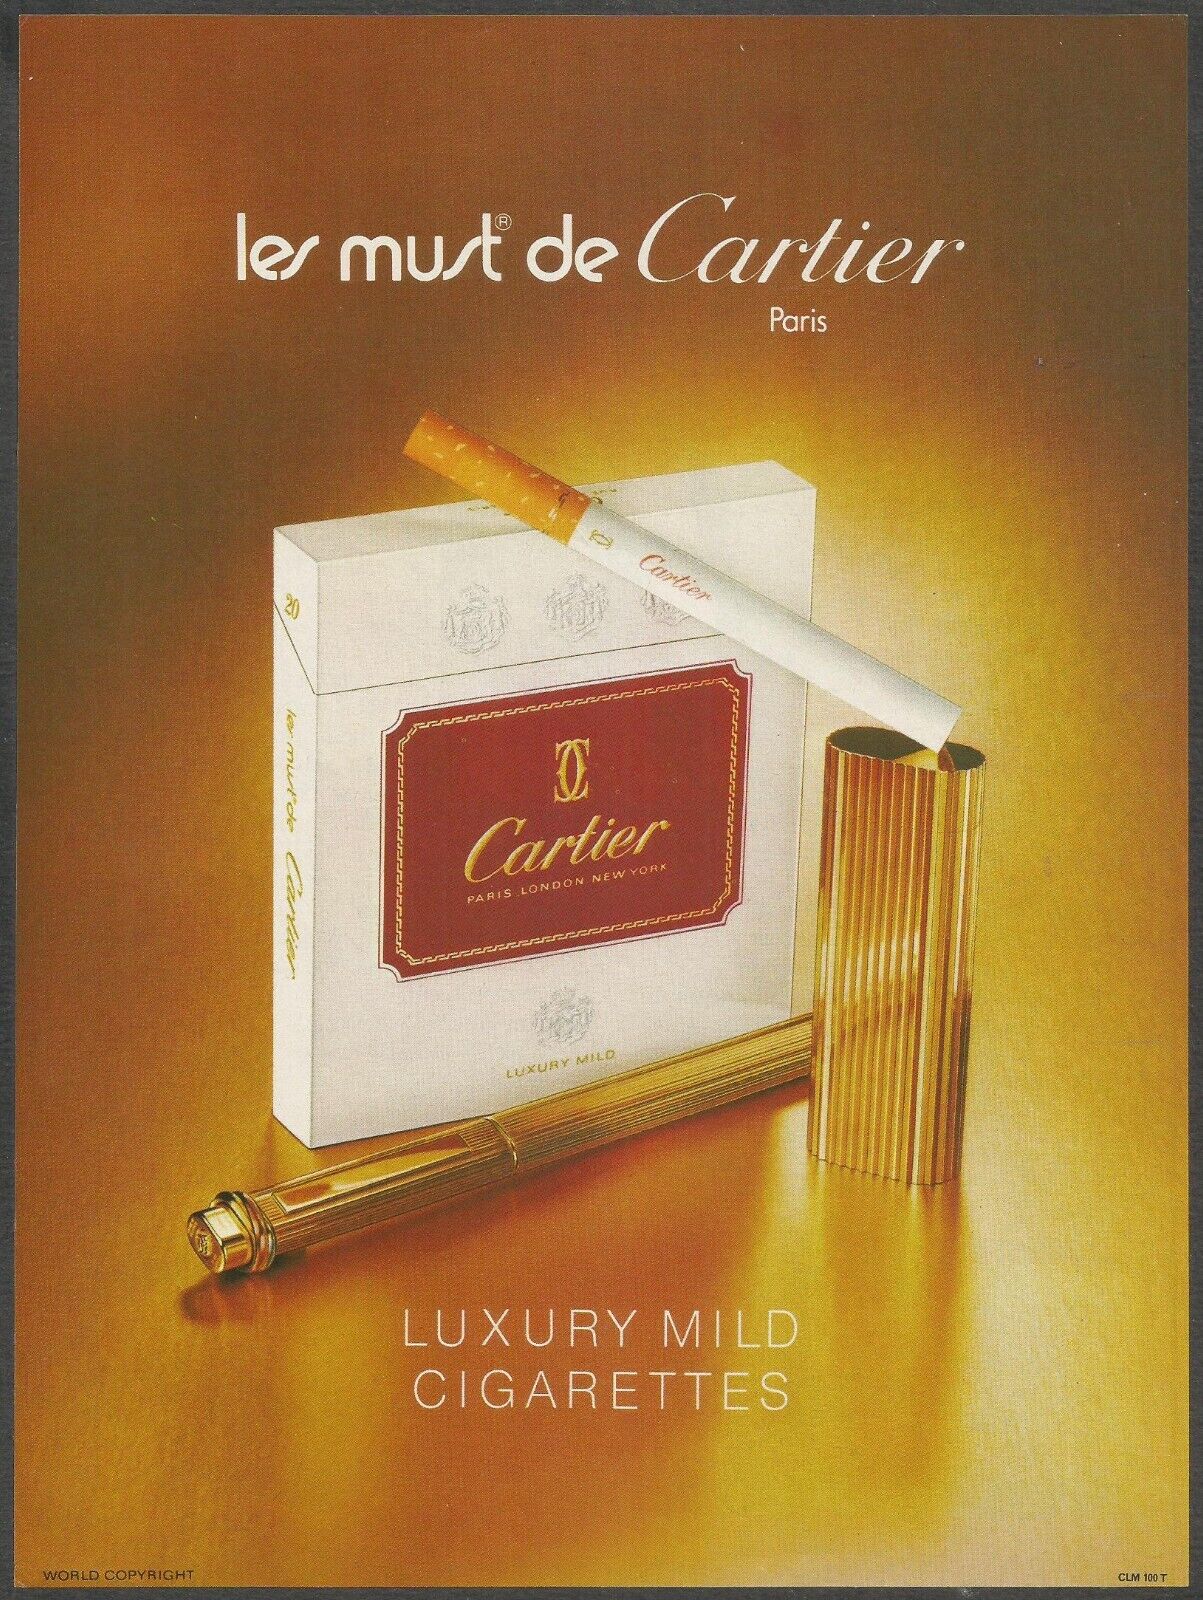 Cartier Luxury Mild Cigarettes - Les must de Cartier - 1981 Vintage Print Ad